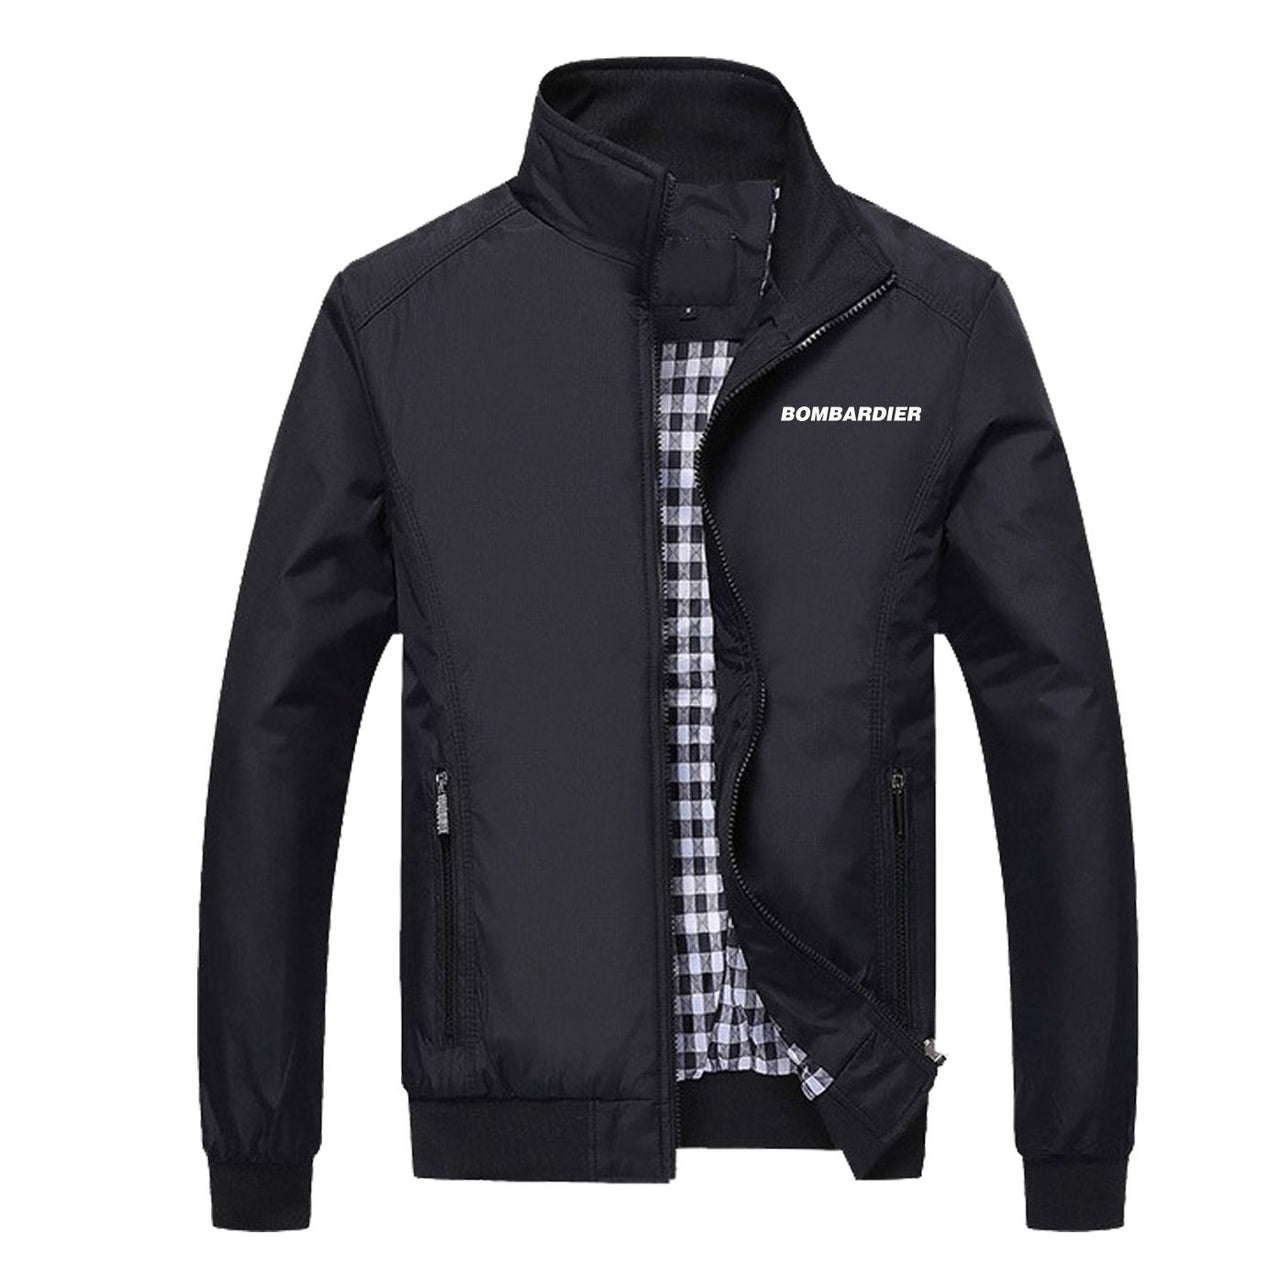 Bombardier & Text Designed Stylish Jackets